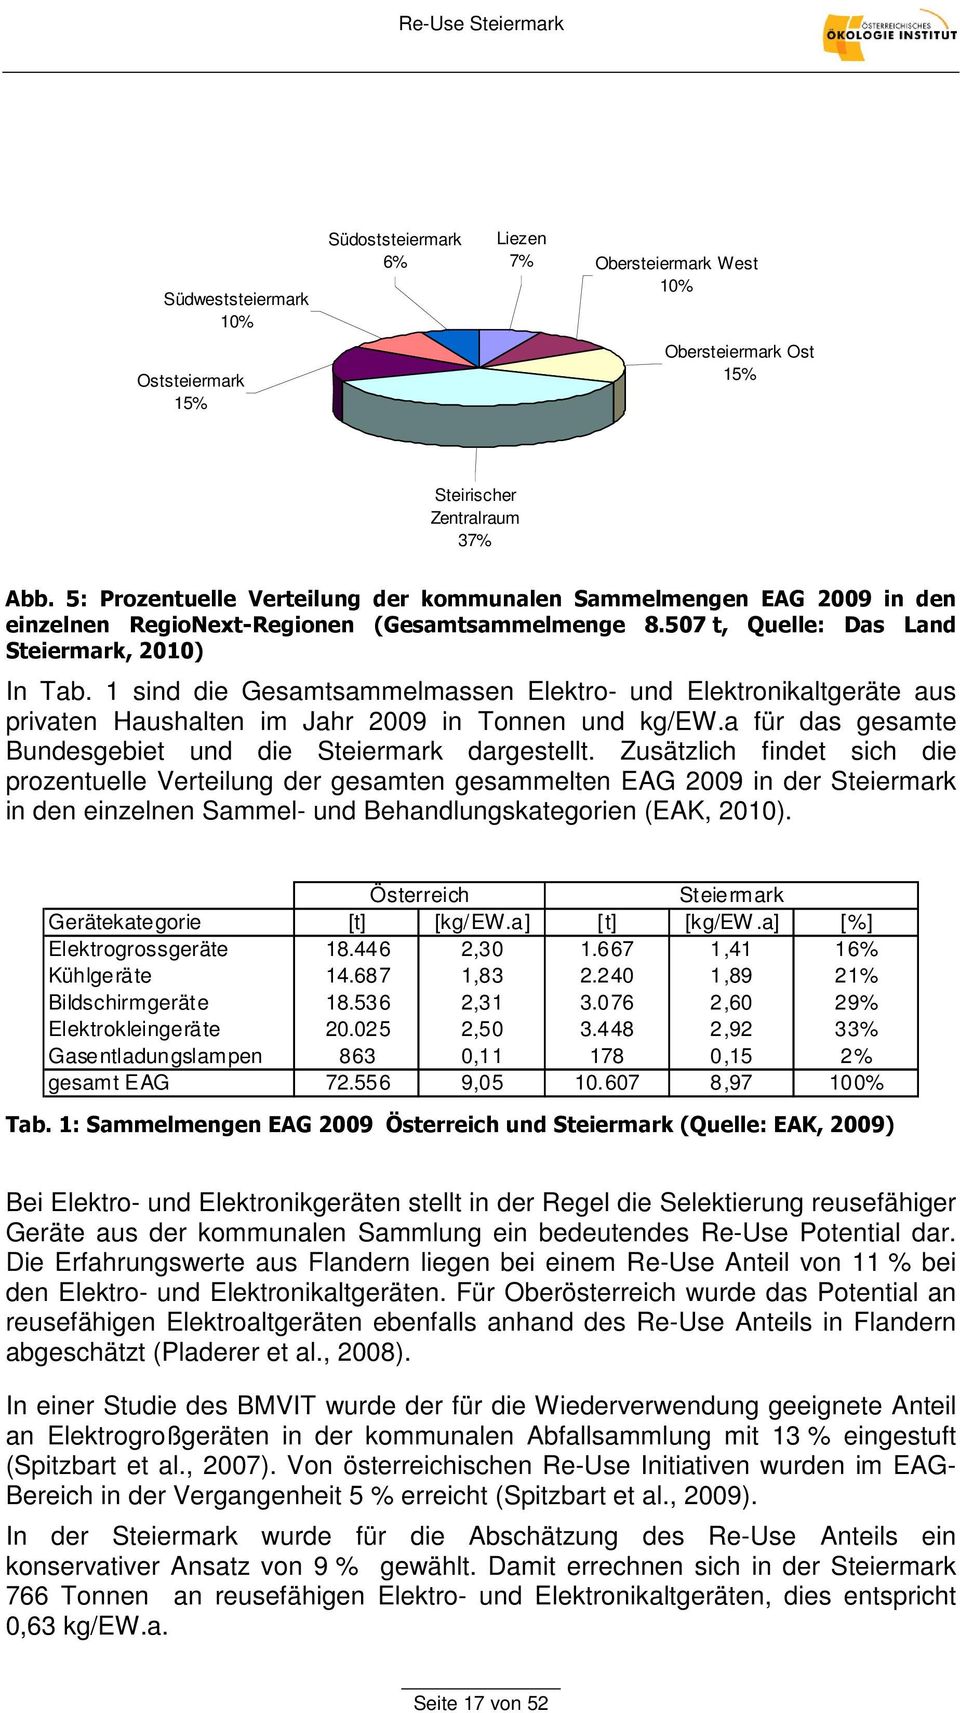 1 sind die Gesamtsammelmassen Elektro- und Elektronikaltgeräte aus privaten Haushalten im Jahr 2009 in Tonnen und kg/ew.a für das gesamte Bundesgebiet und die Steiermark dargestellt.